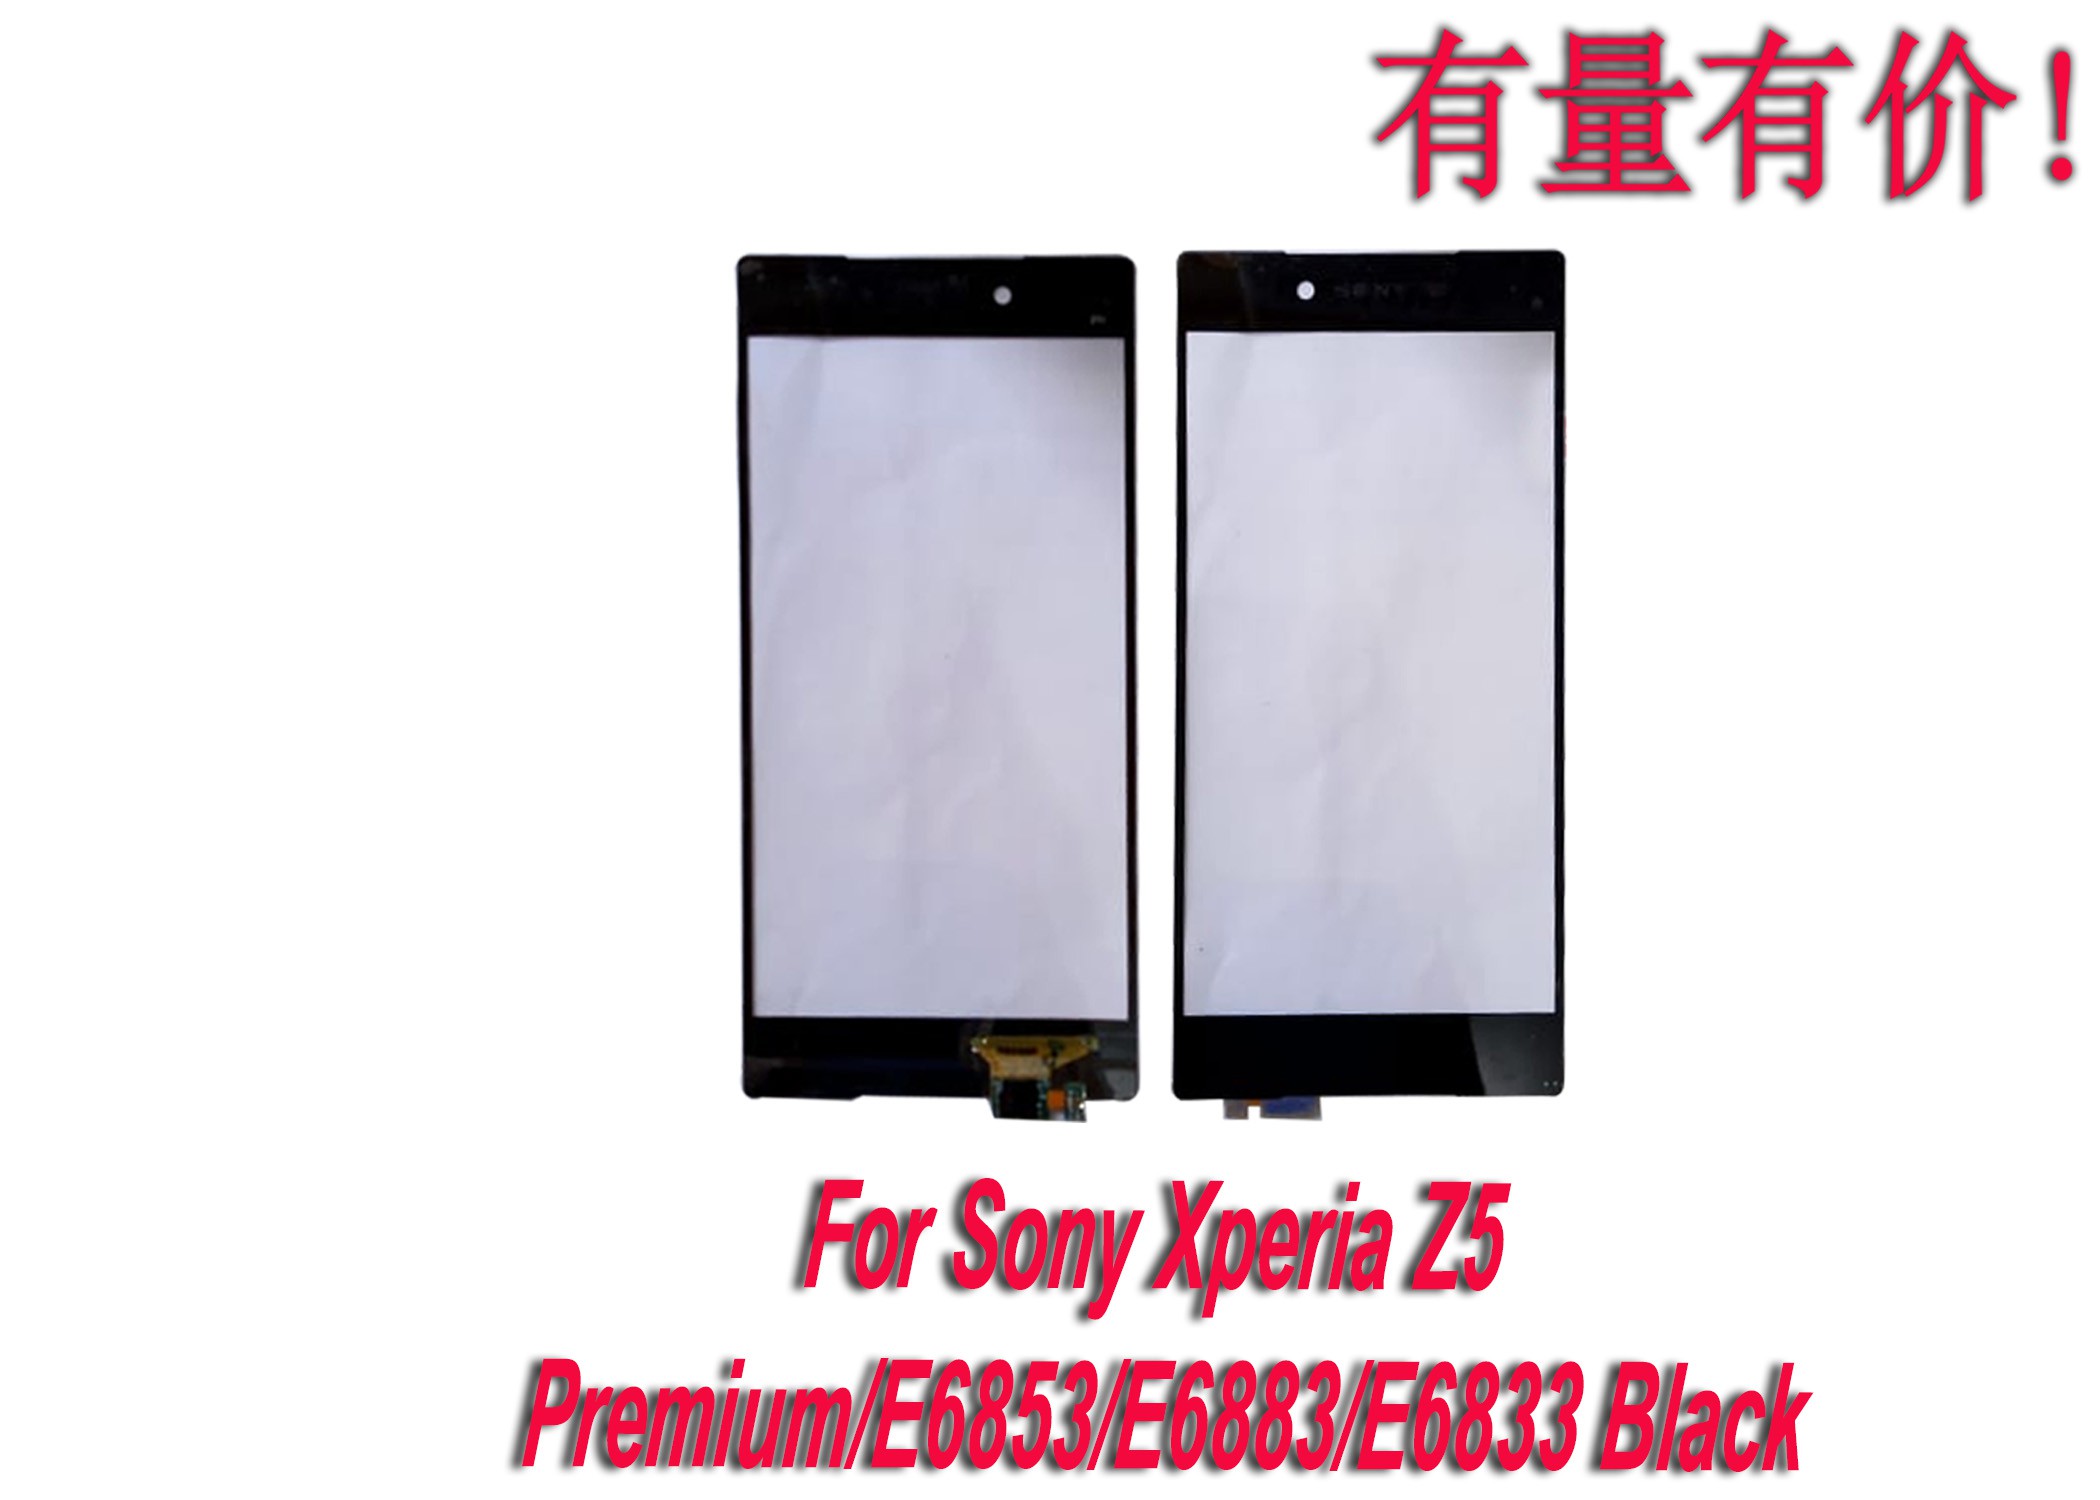 Màn Hình Cảm Ứng Thay Thế Cho Sony Xperia Z5 Premium - E6853 - E6883 - E6833 - Black - Ts Sny